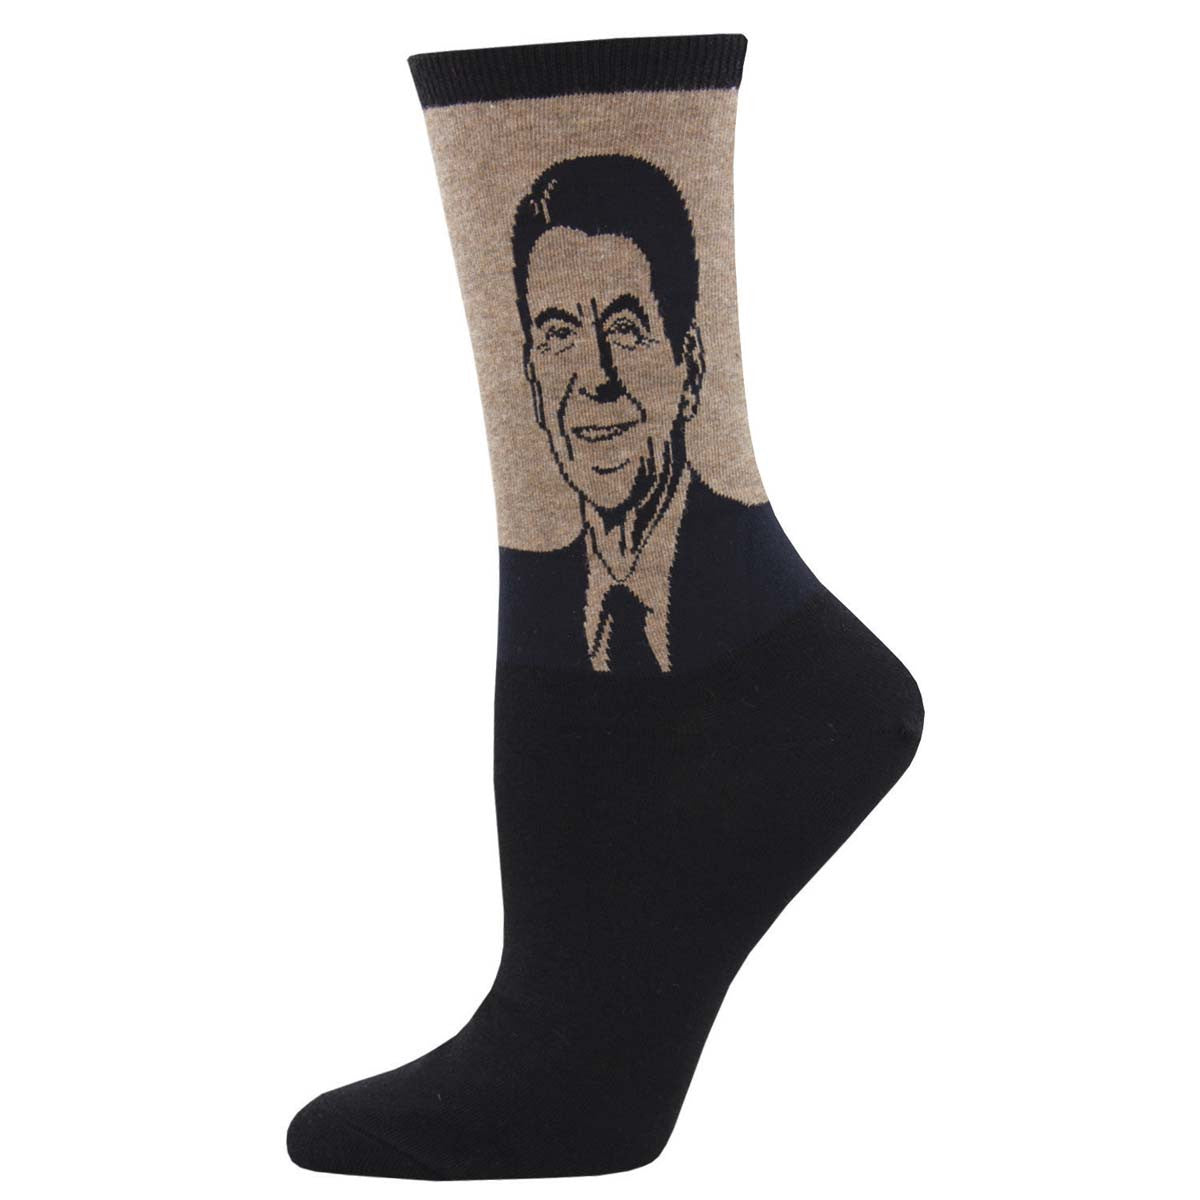 Reagan Socks